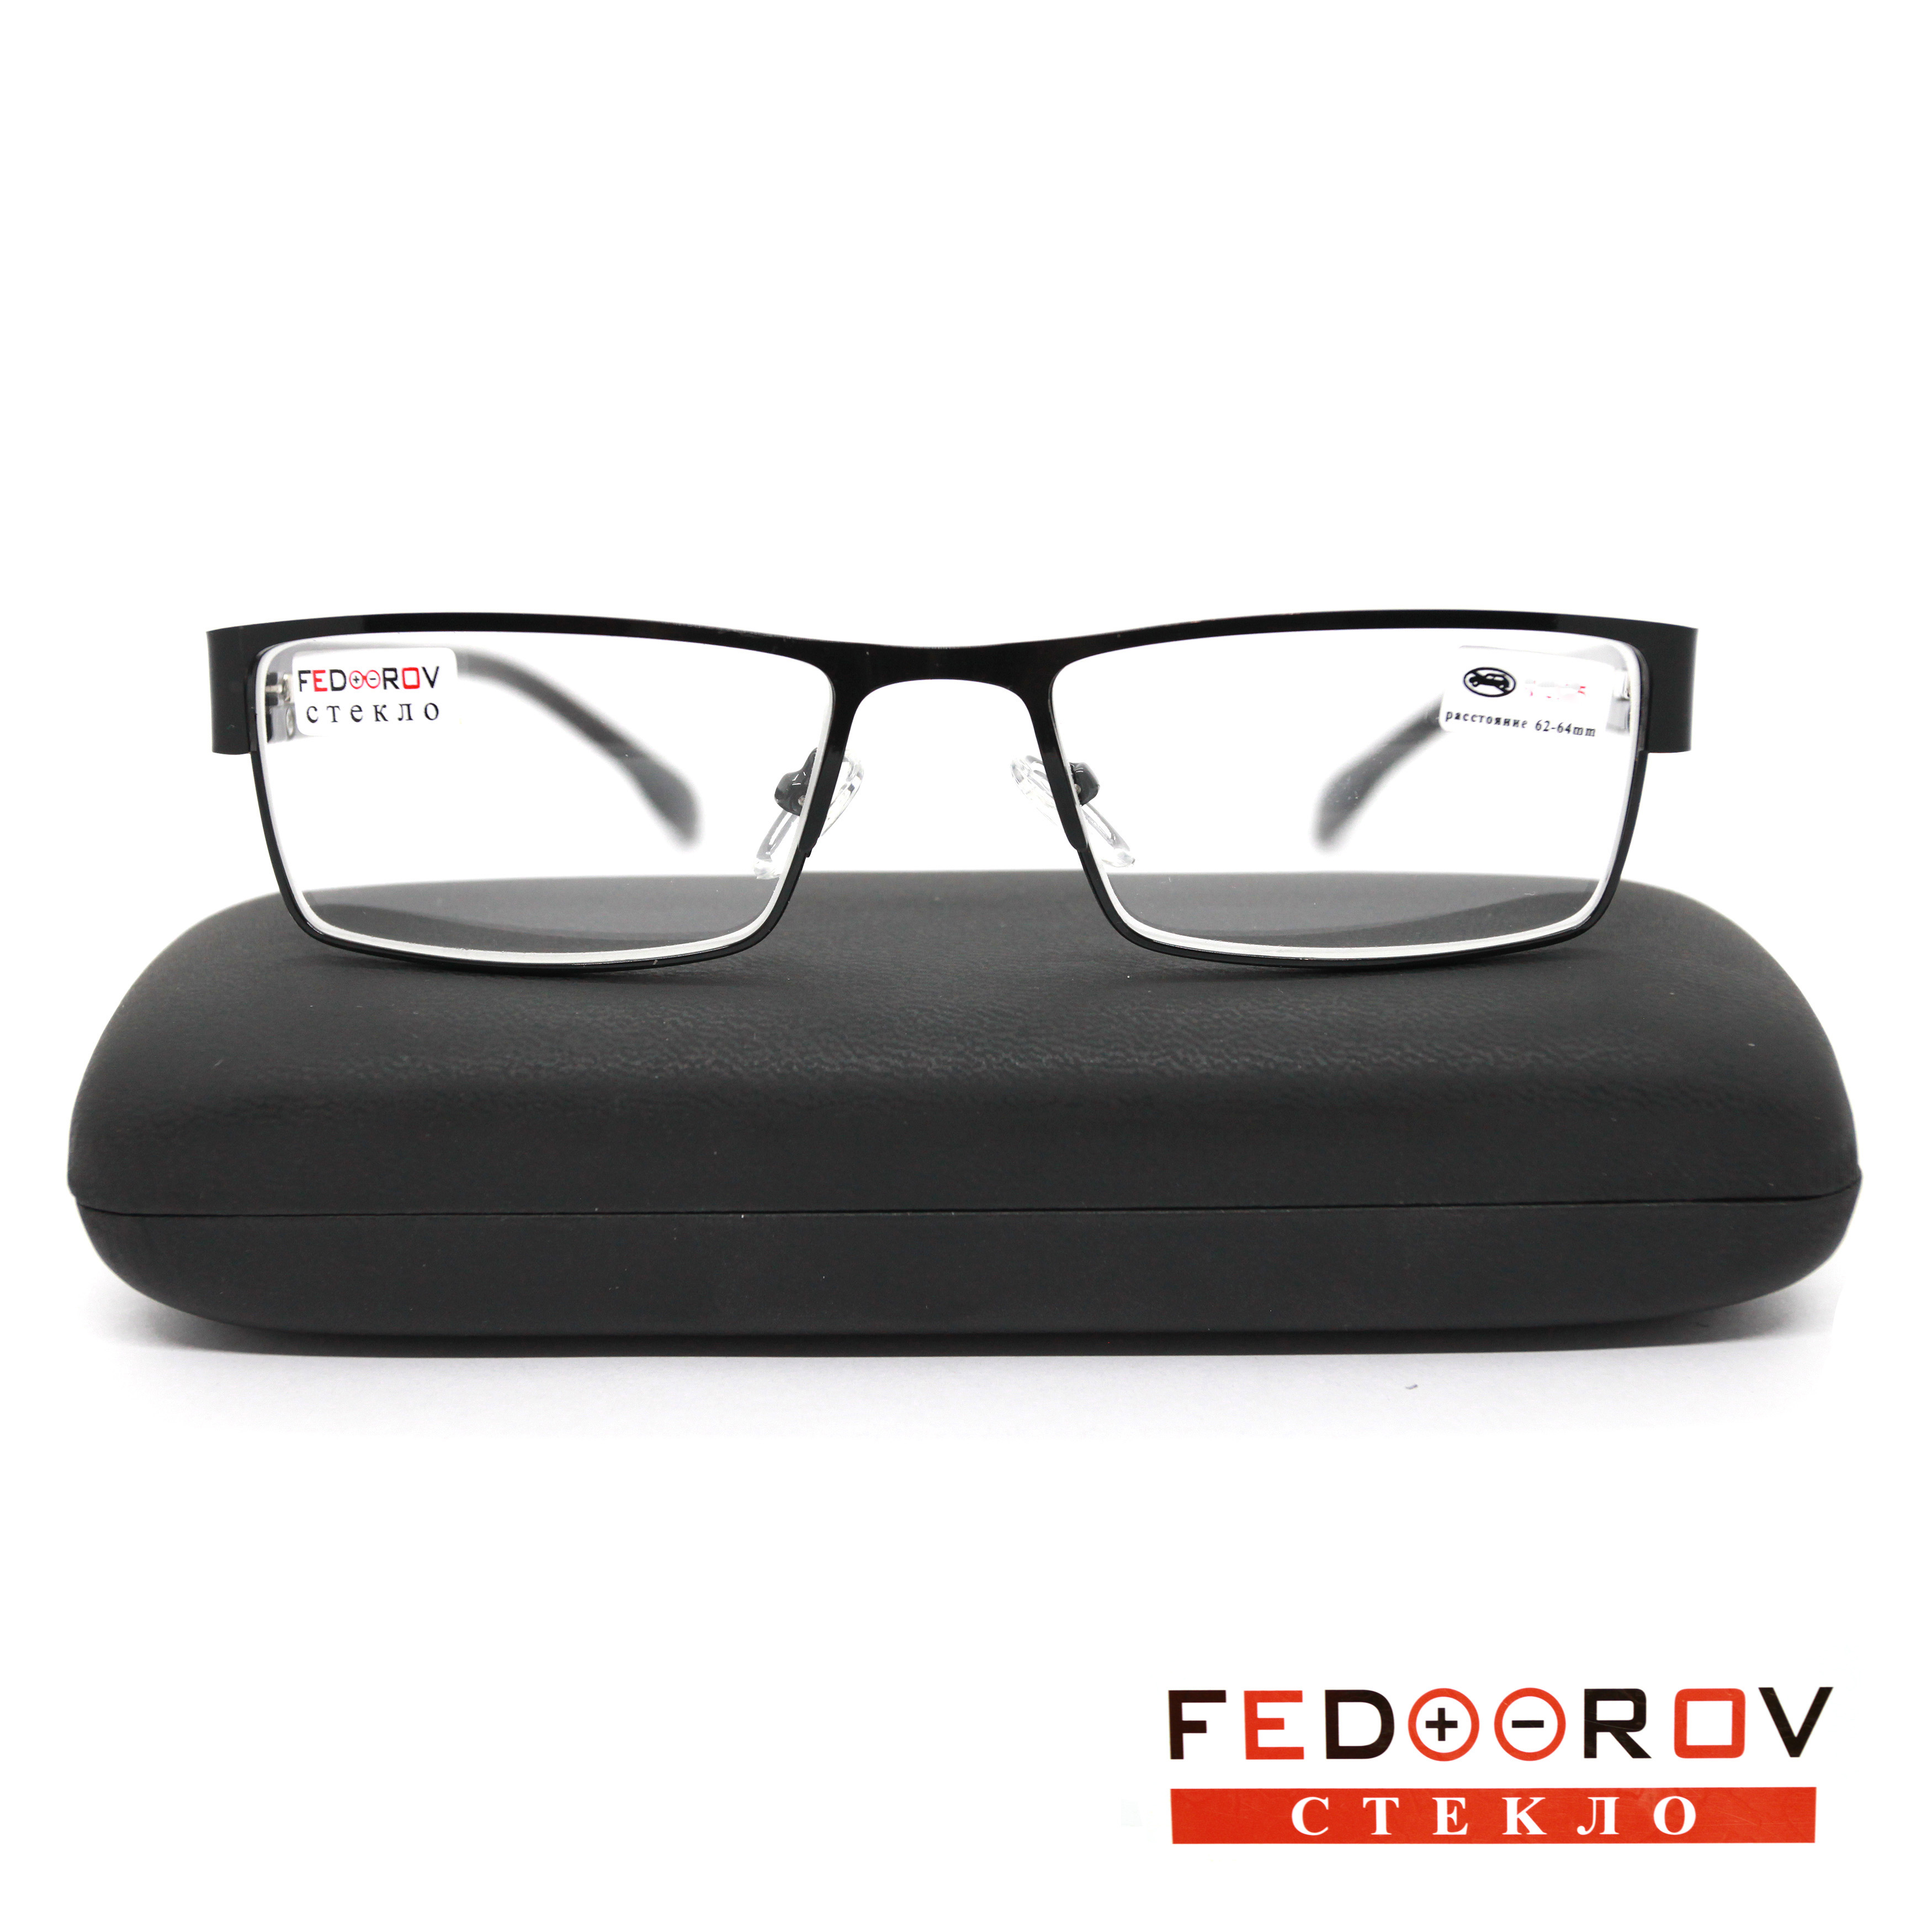 Готовые очки Fedrov 019, со стеклянной линзой, +4,00, c футляром, черный, РЦ 62-64